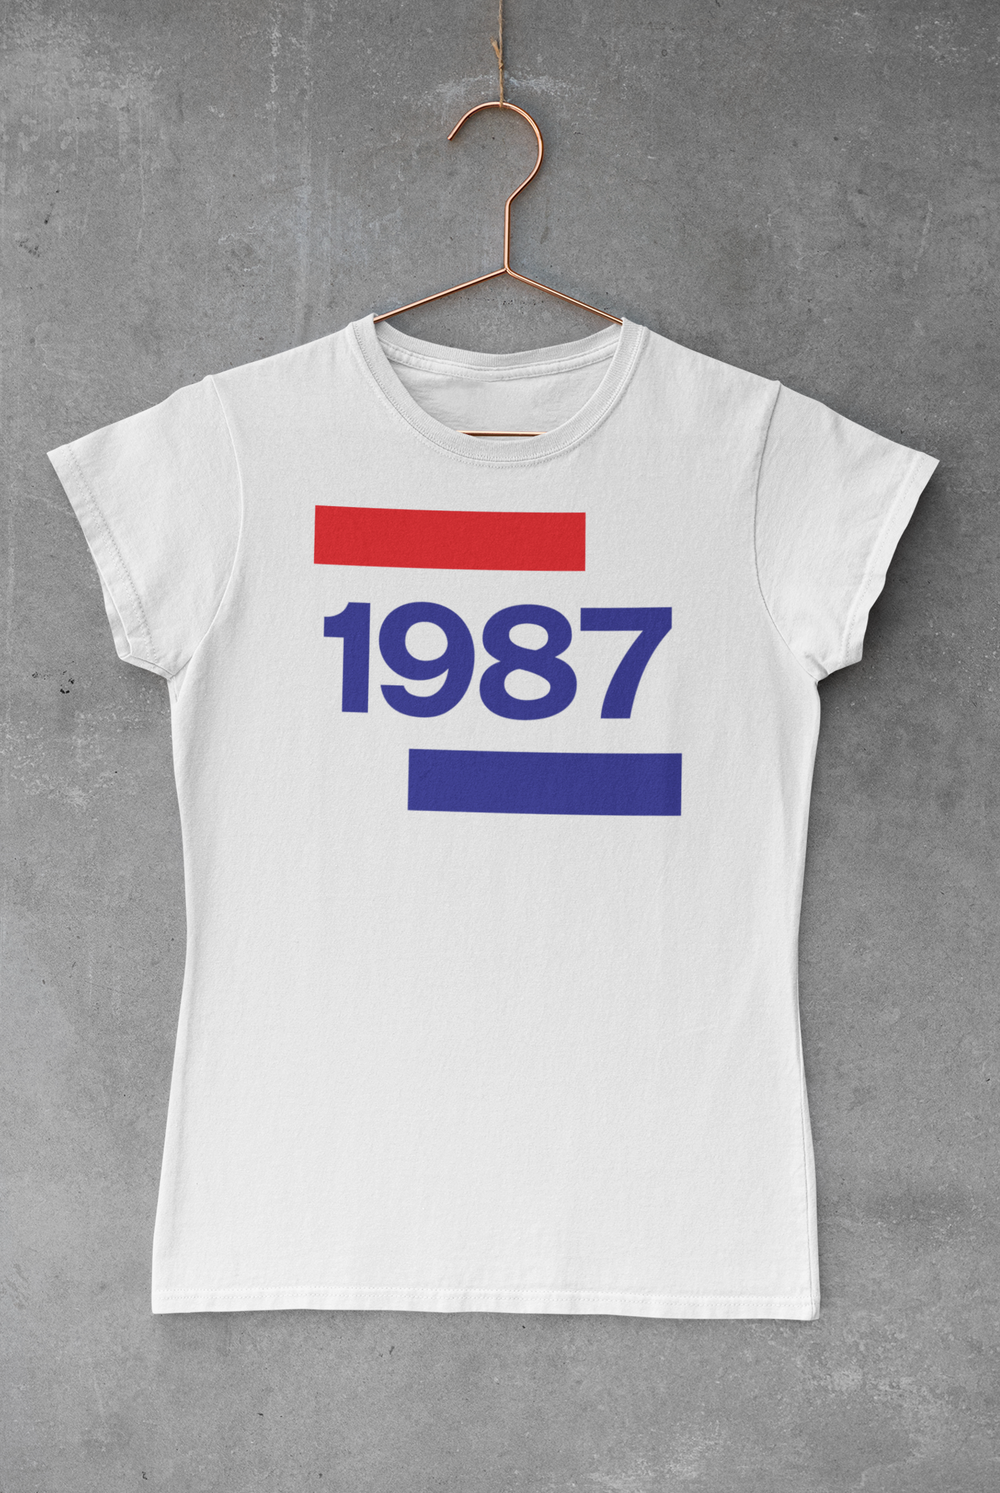 1987 Going Dutch Women's Softstyle Tee - TalkPeng